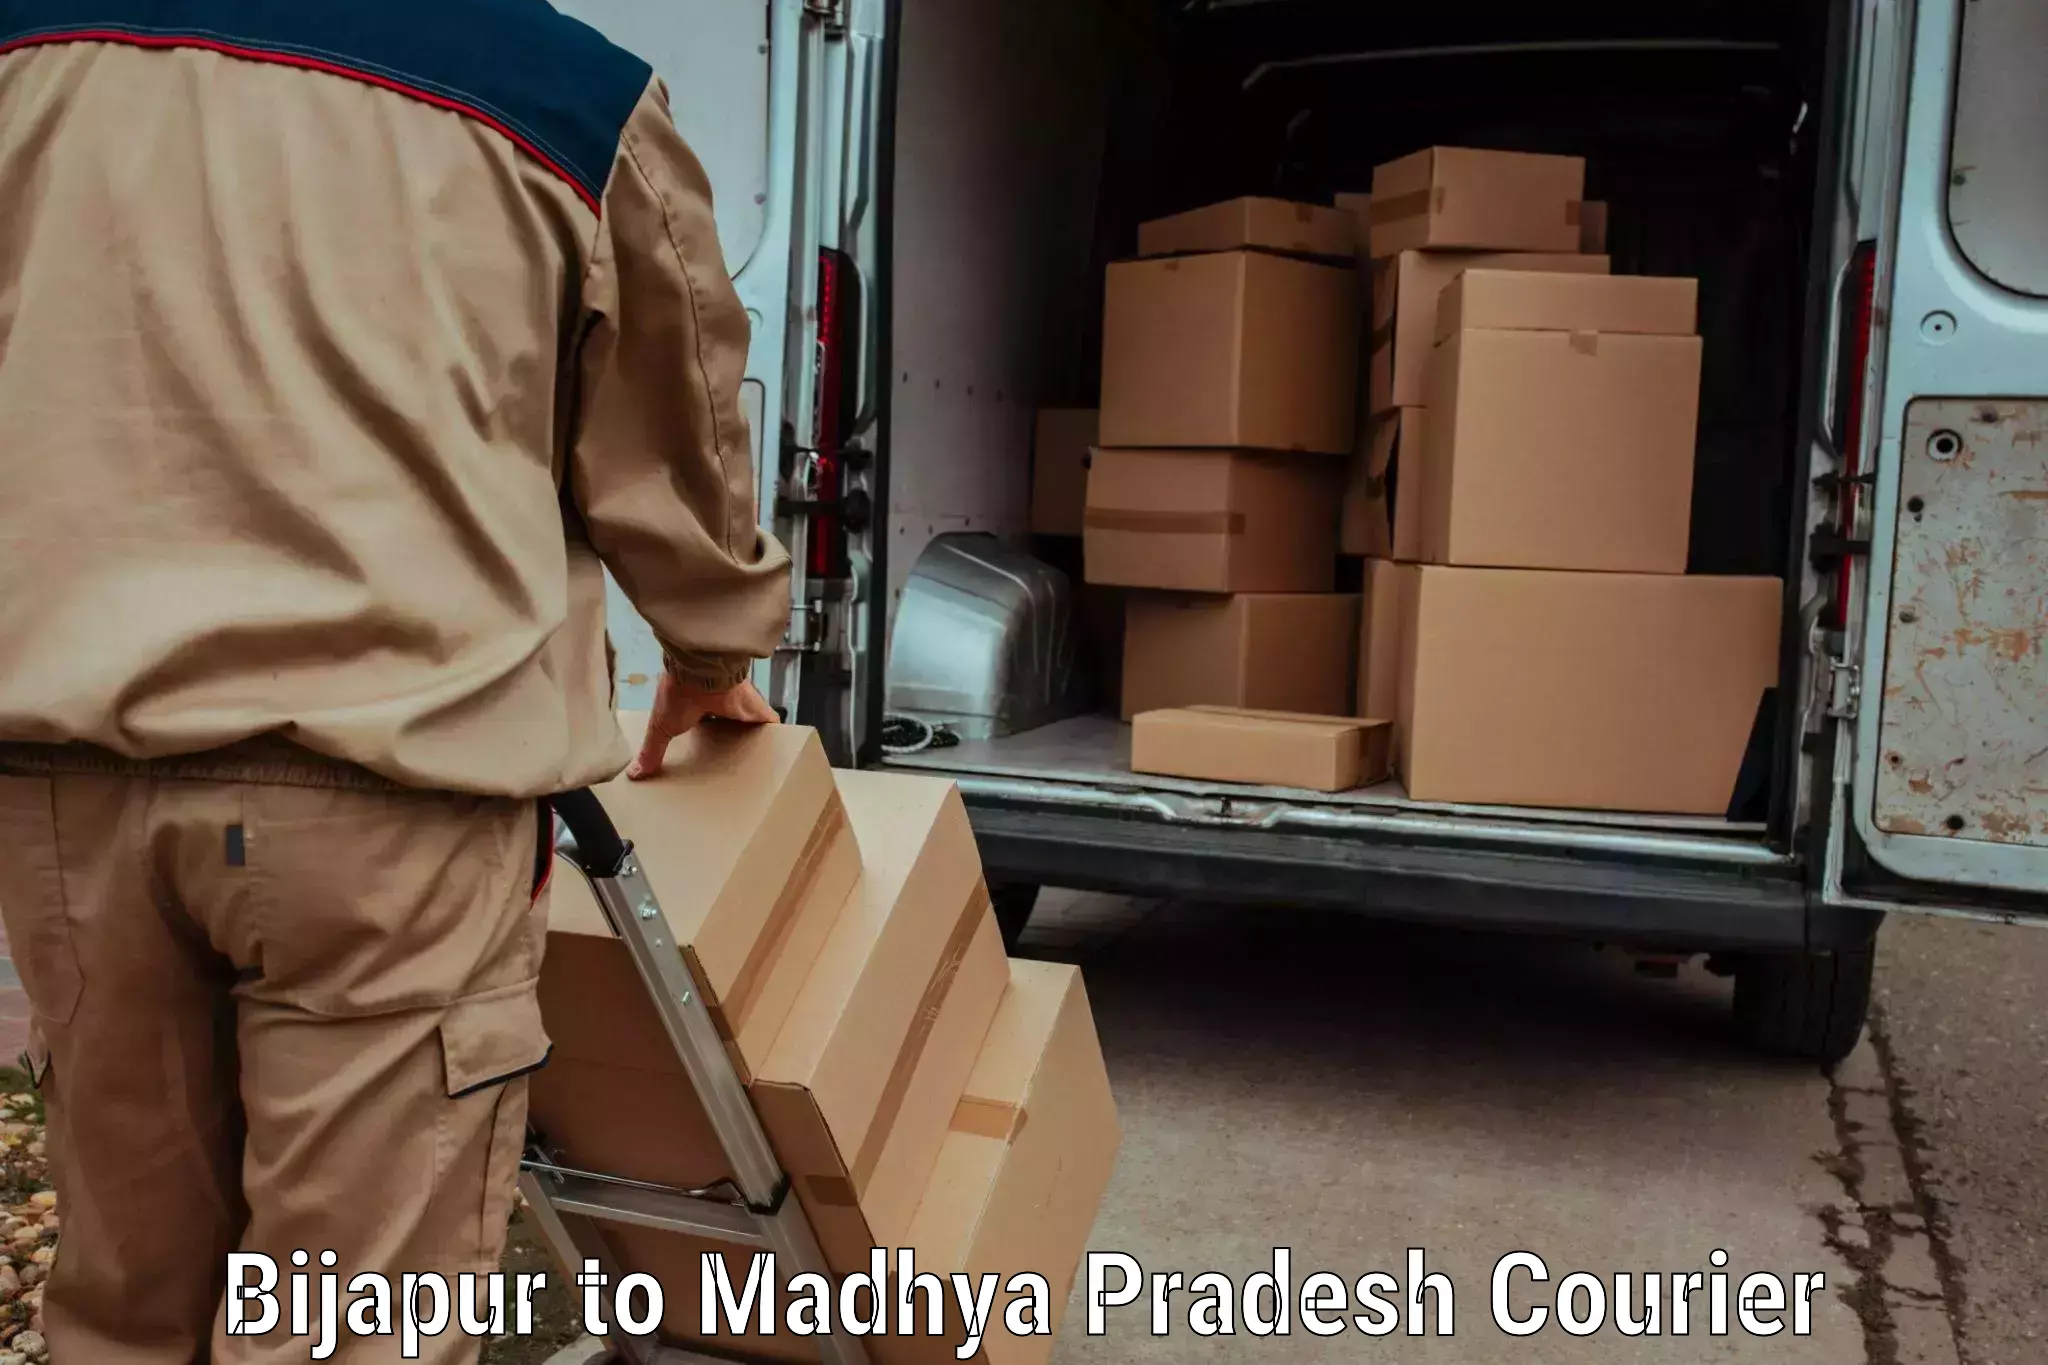 Affordable parcel service Bijapur to Amarkantak